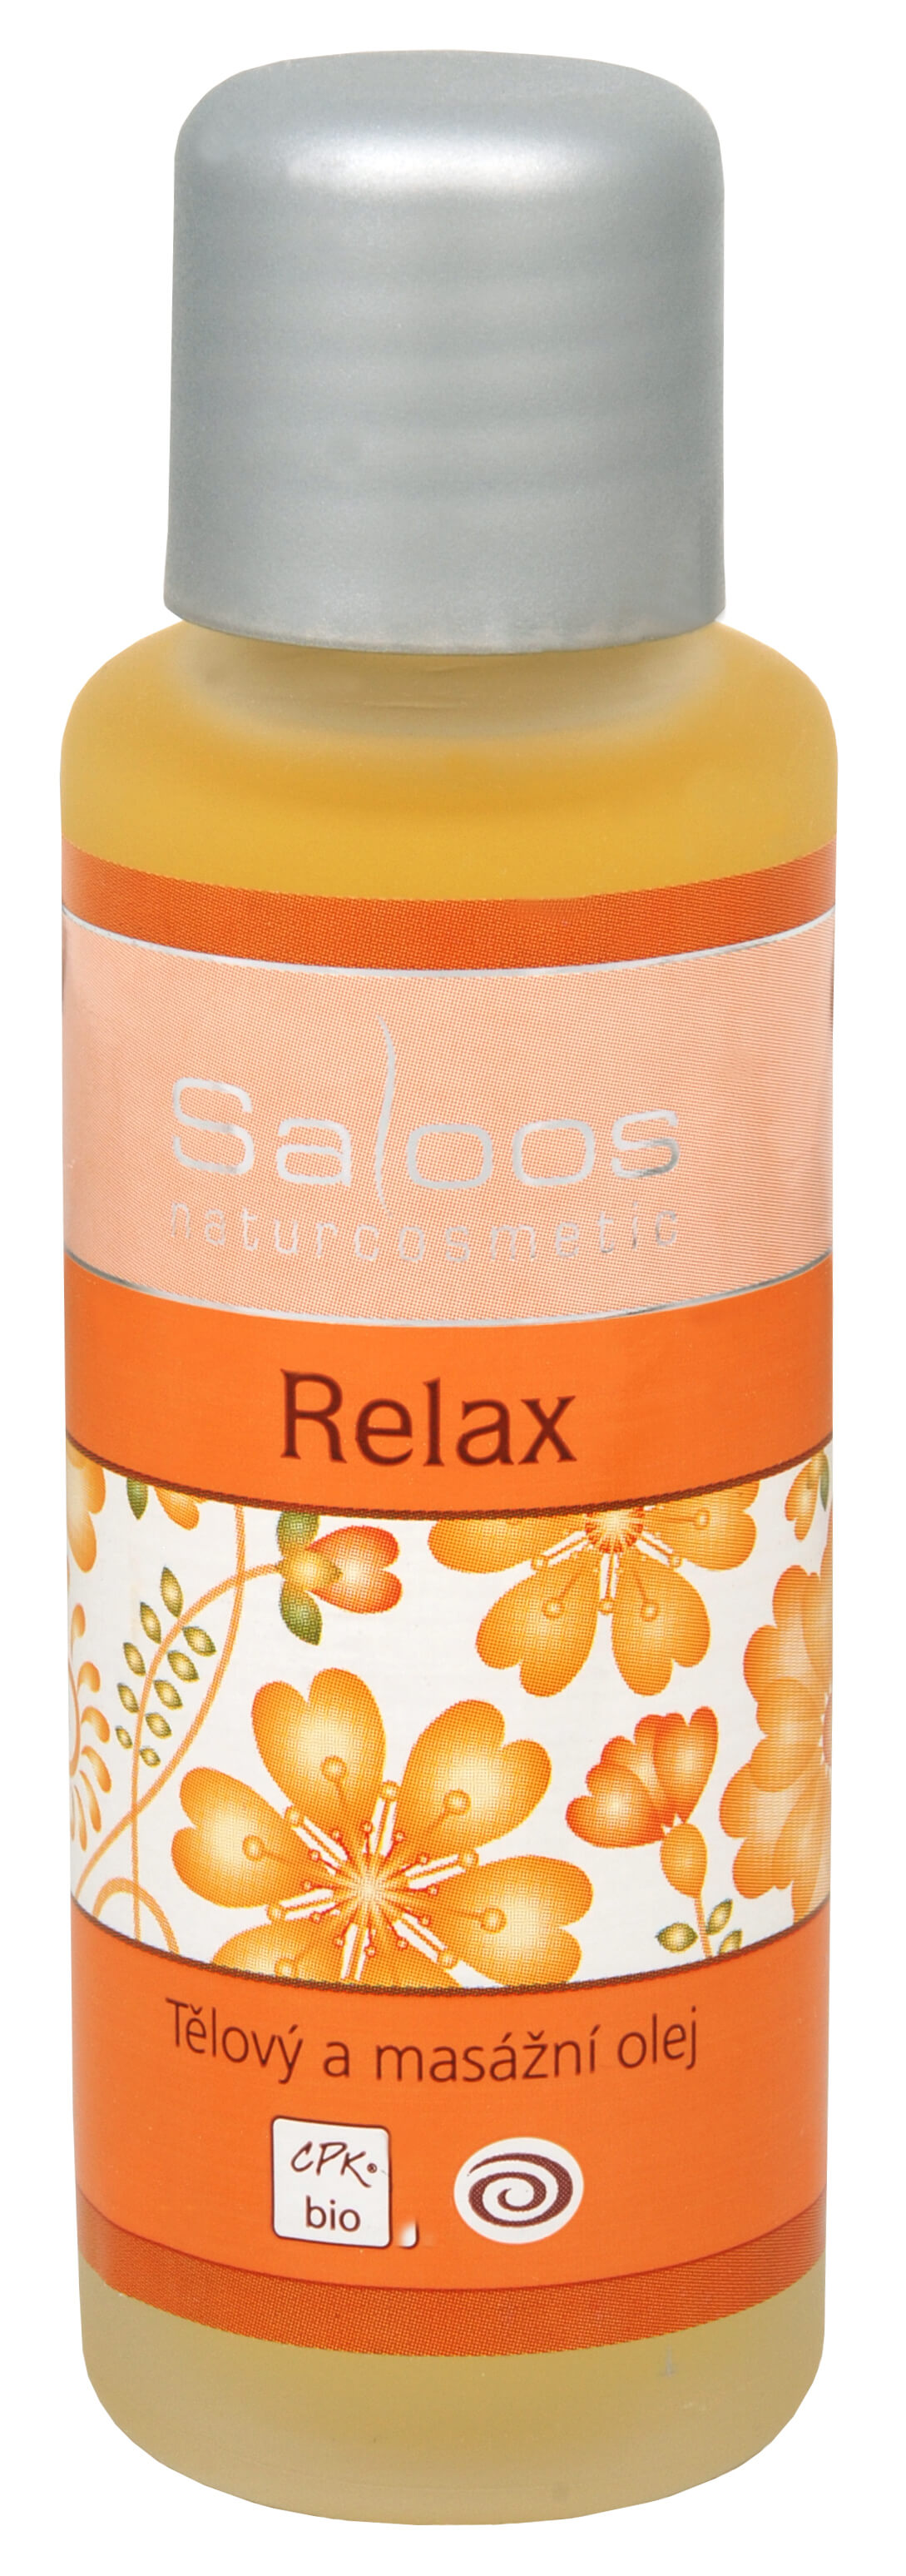 Zobrazit detail výrobku Saloos Bio tělový a masážní olej - Relax 50 ml